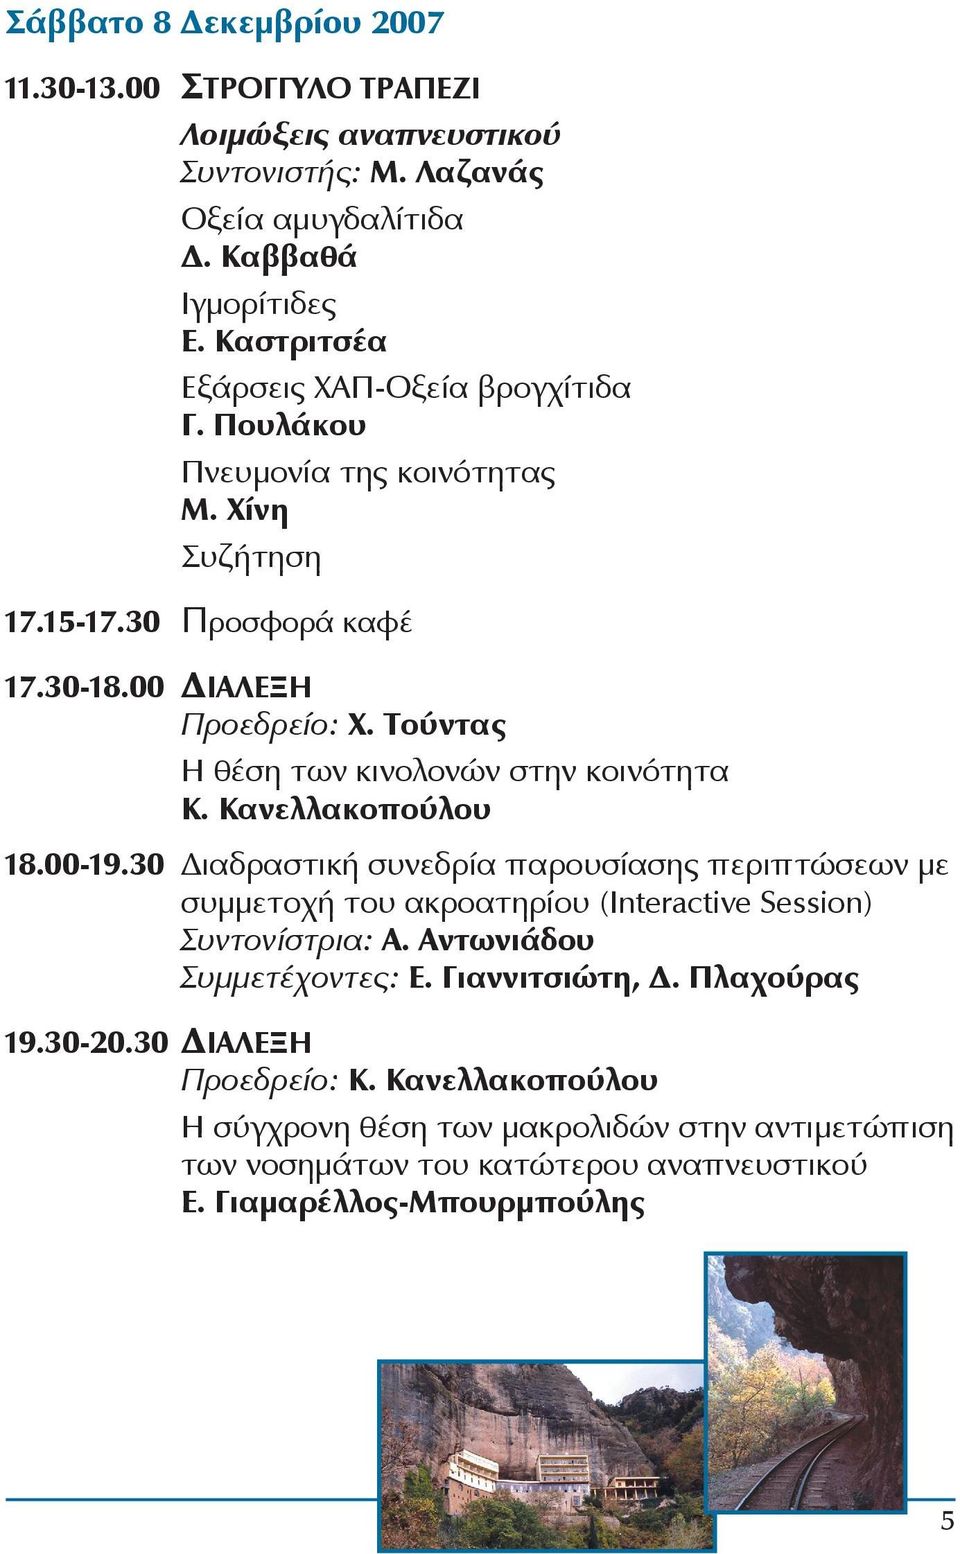 Τούντας Η θέση των κινολονών στην κοινότητα Κ. Κανελλακοπούλου 18.00-19.